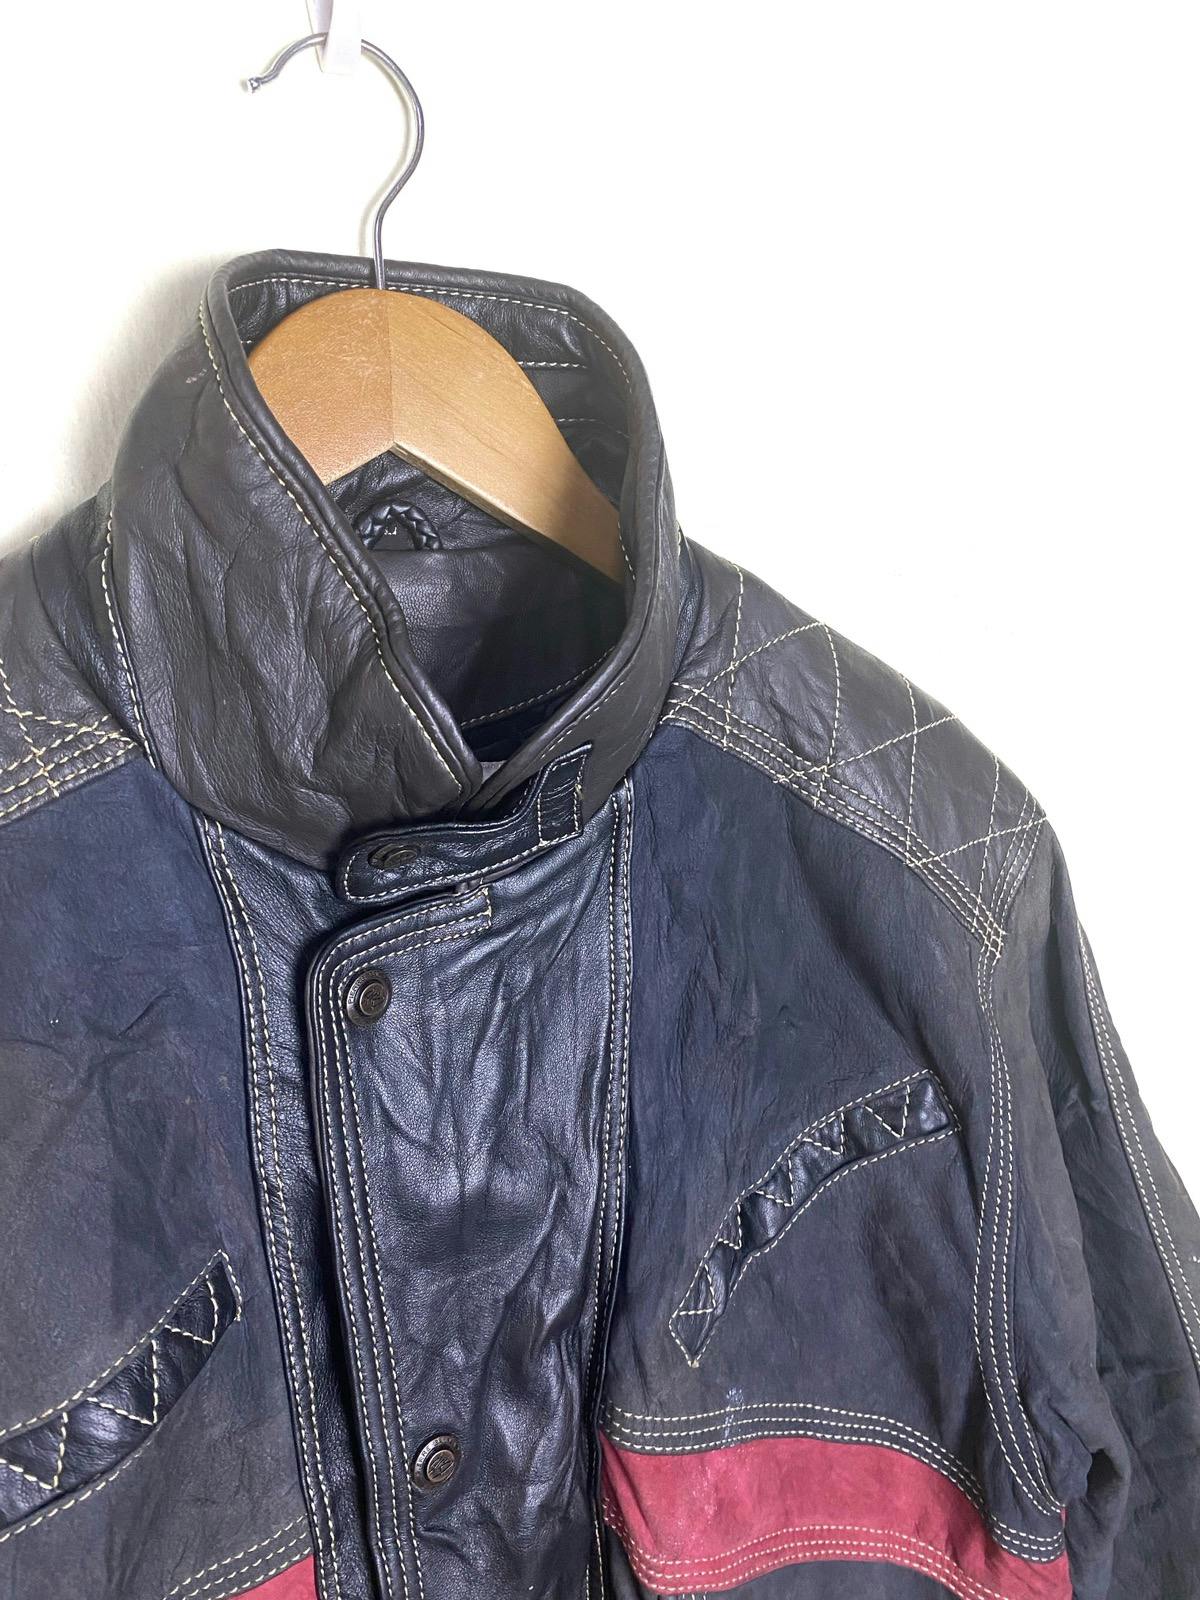 Pierre Balmain Paris Leather Jacket - 8